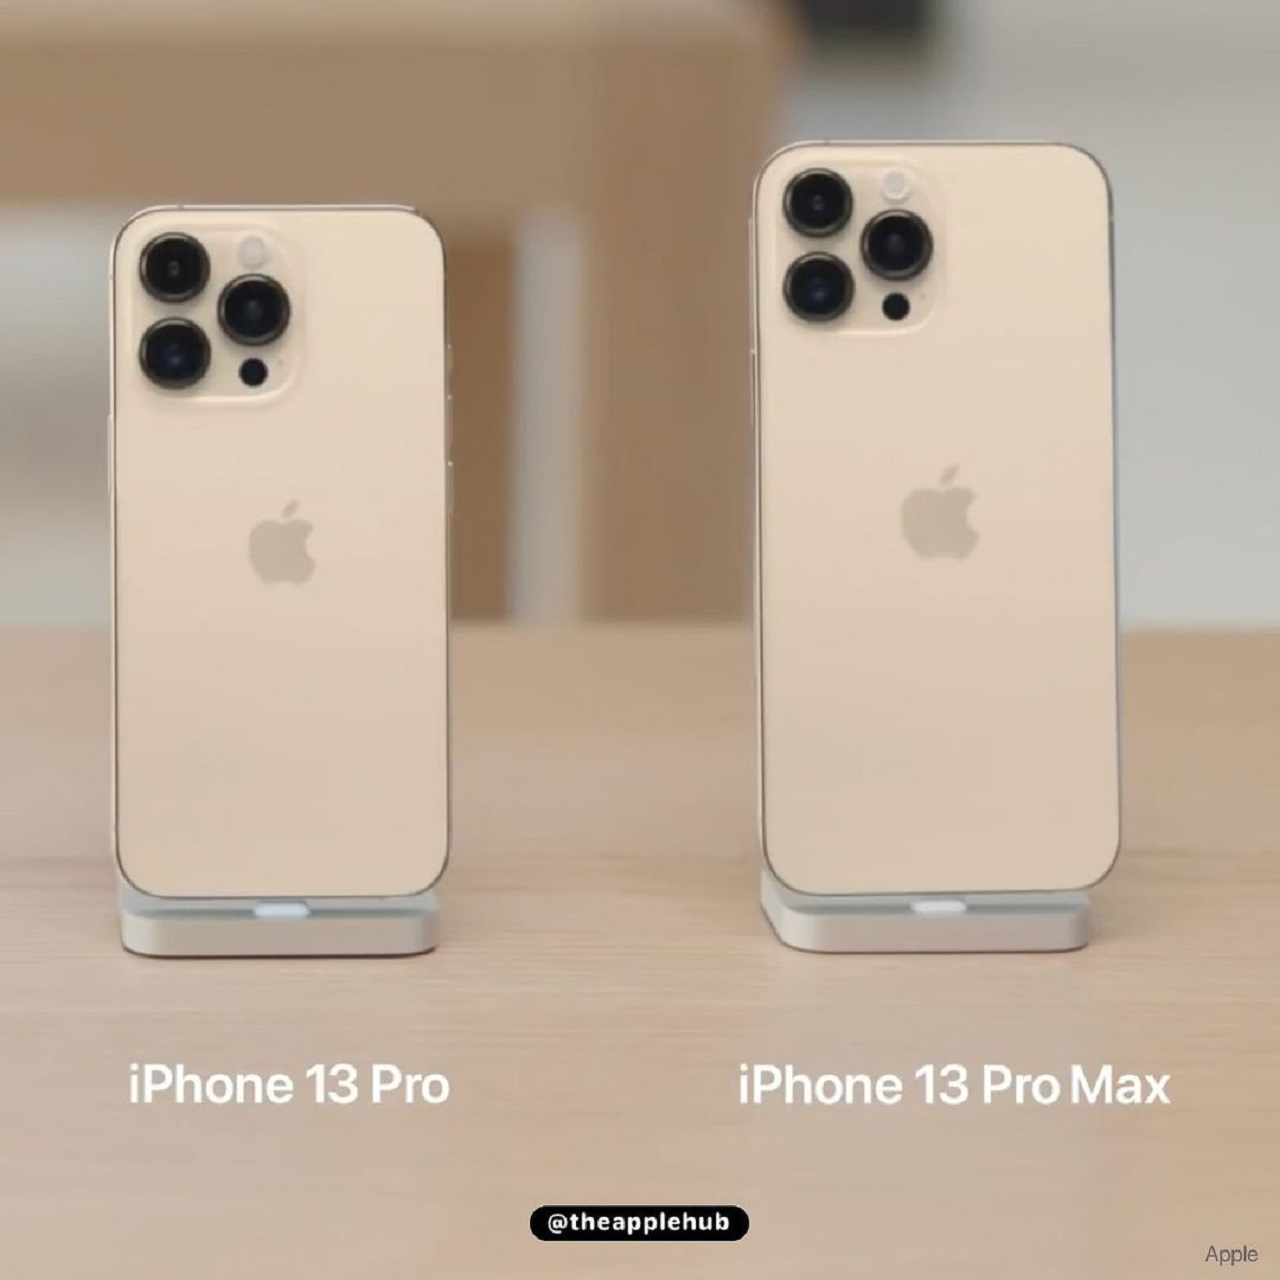 iPhone 13 series color options: Tự tin thể hiện phong cách của bạn với iPhone 13 series và các tùy chọn màu sắc đa dạng. Từ màu Sierra Blue mới lạ đến các lựa chọn truyền thống như Gold, Silver và Graphite, bạn sẽ tìm thấy điều hoàn hảo cho mình.